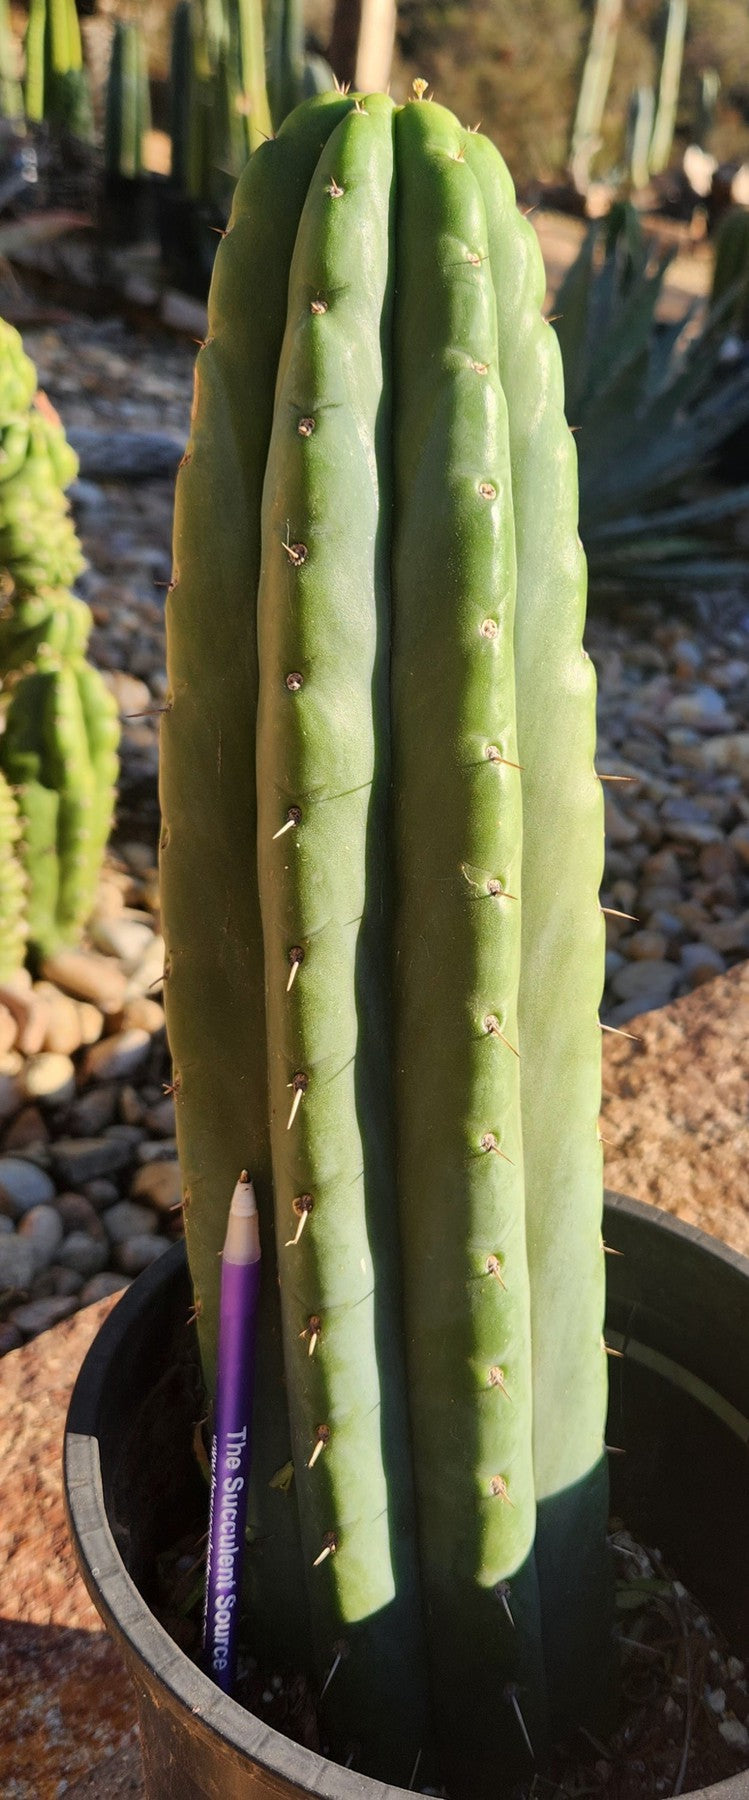 #EC70 EXACT Trichocereus Pachanoi ECK cactus 14"